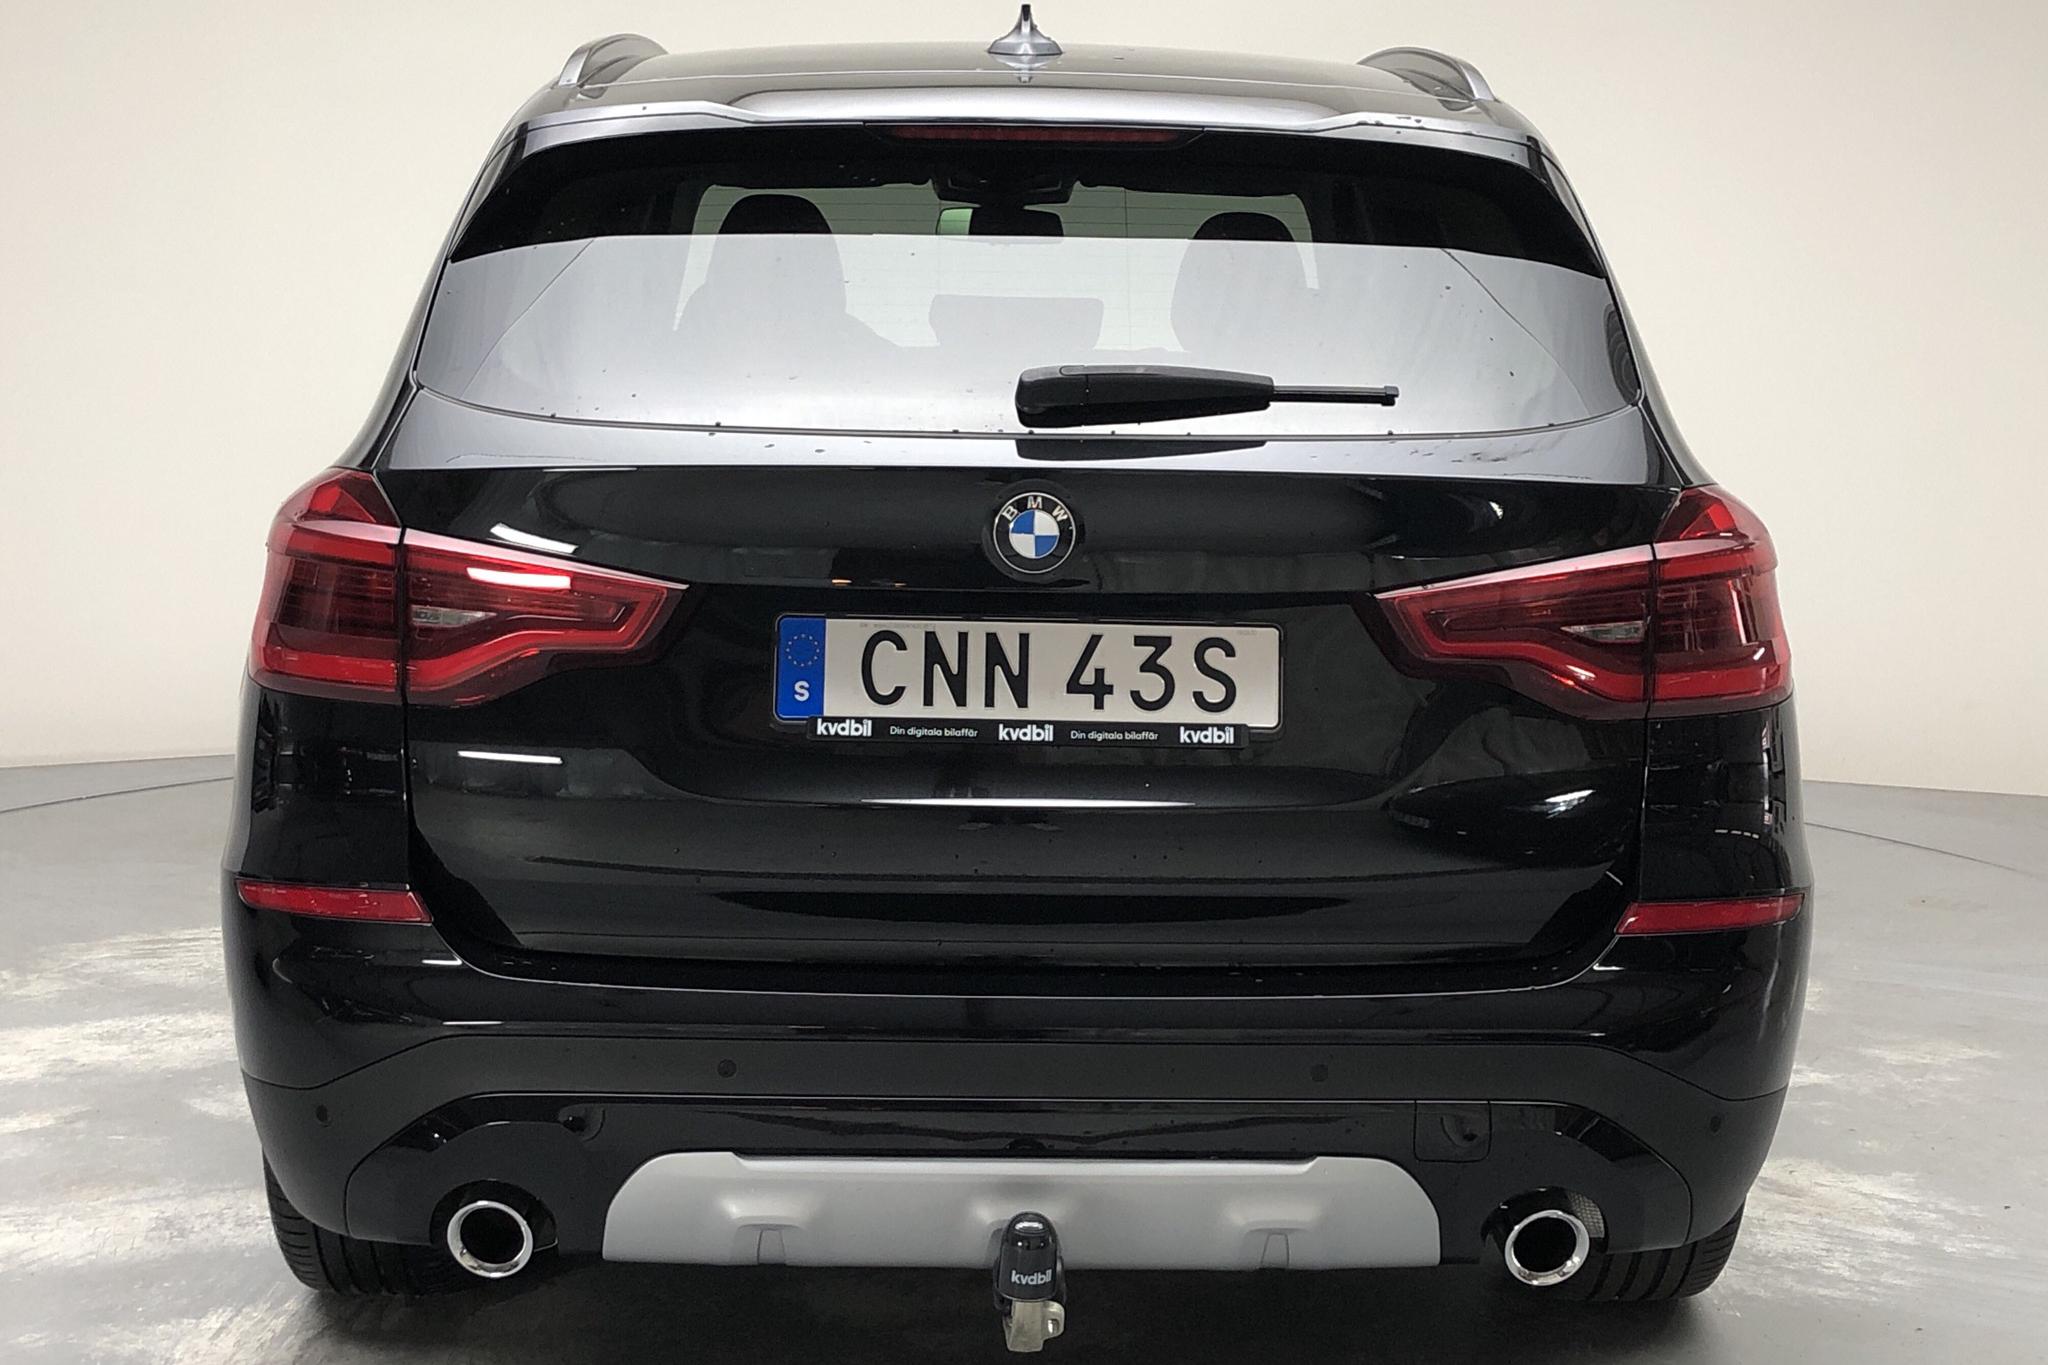 BMW X3 xDrive20d, G01 (190hk) - 35 820 km - Automatic - black - 2019